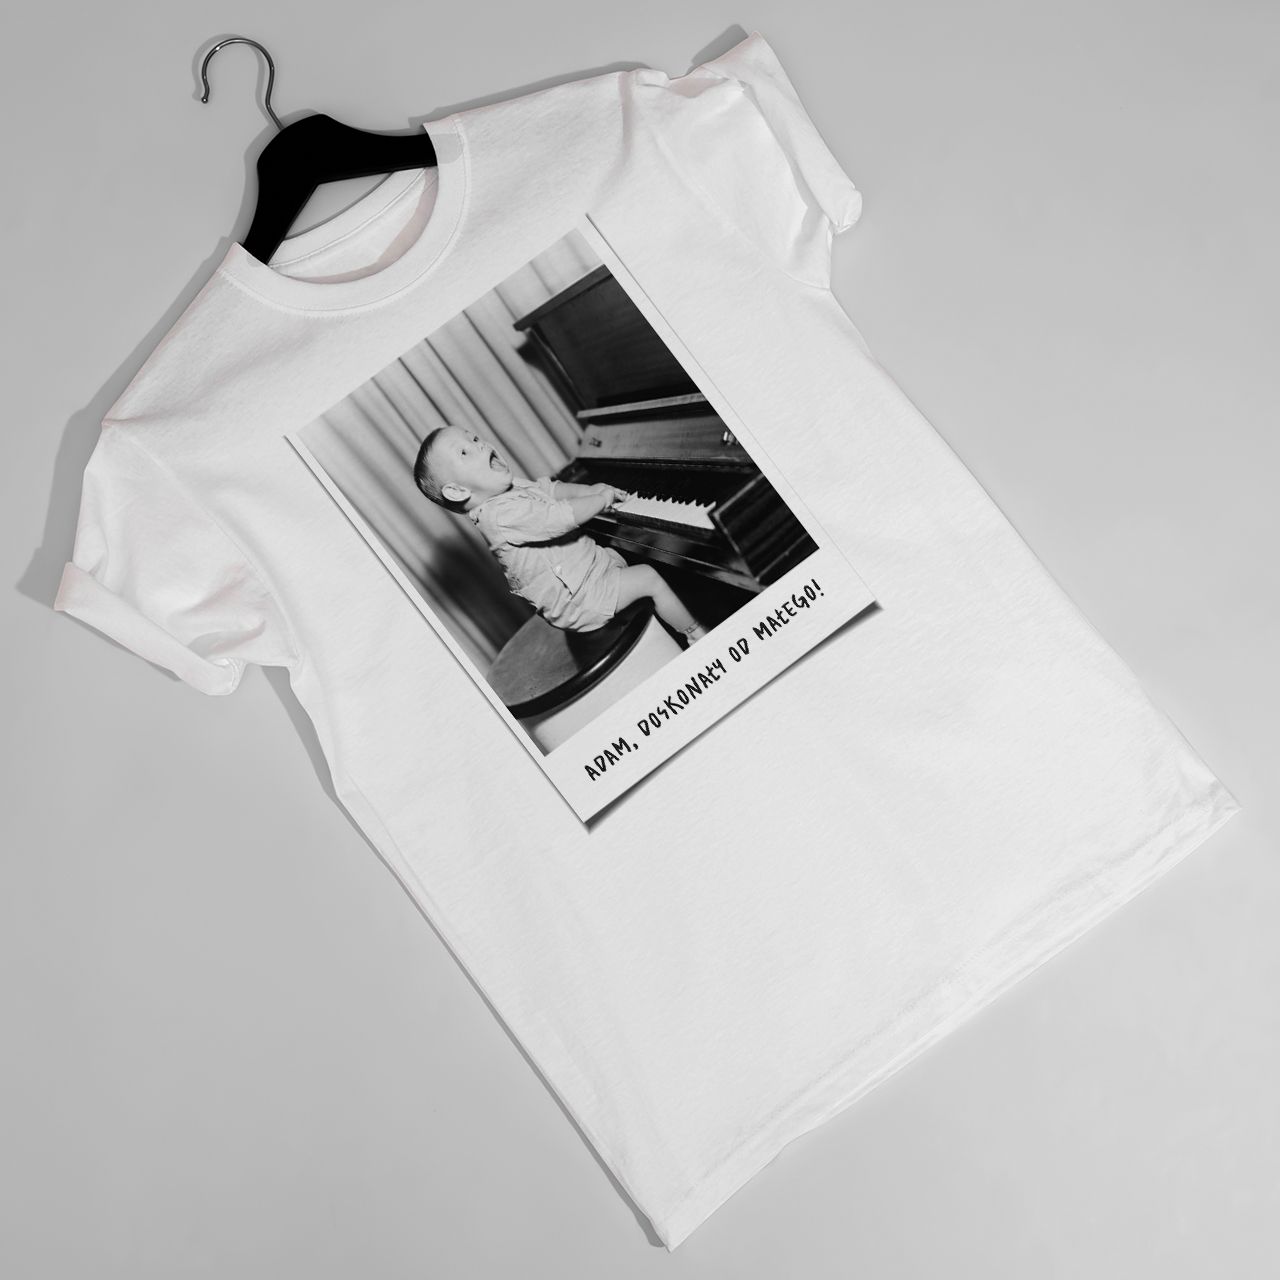 Męska koszulka ze zdjęciem DUŻA FOTKA t-shirt urodzinowy - XXL